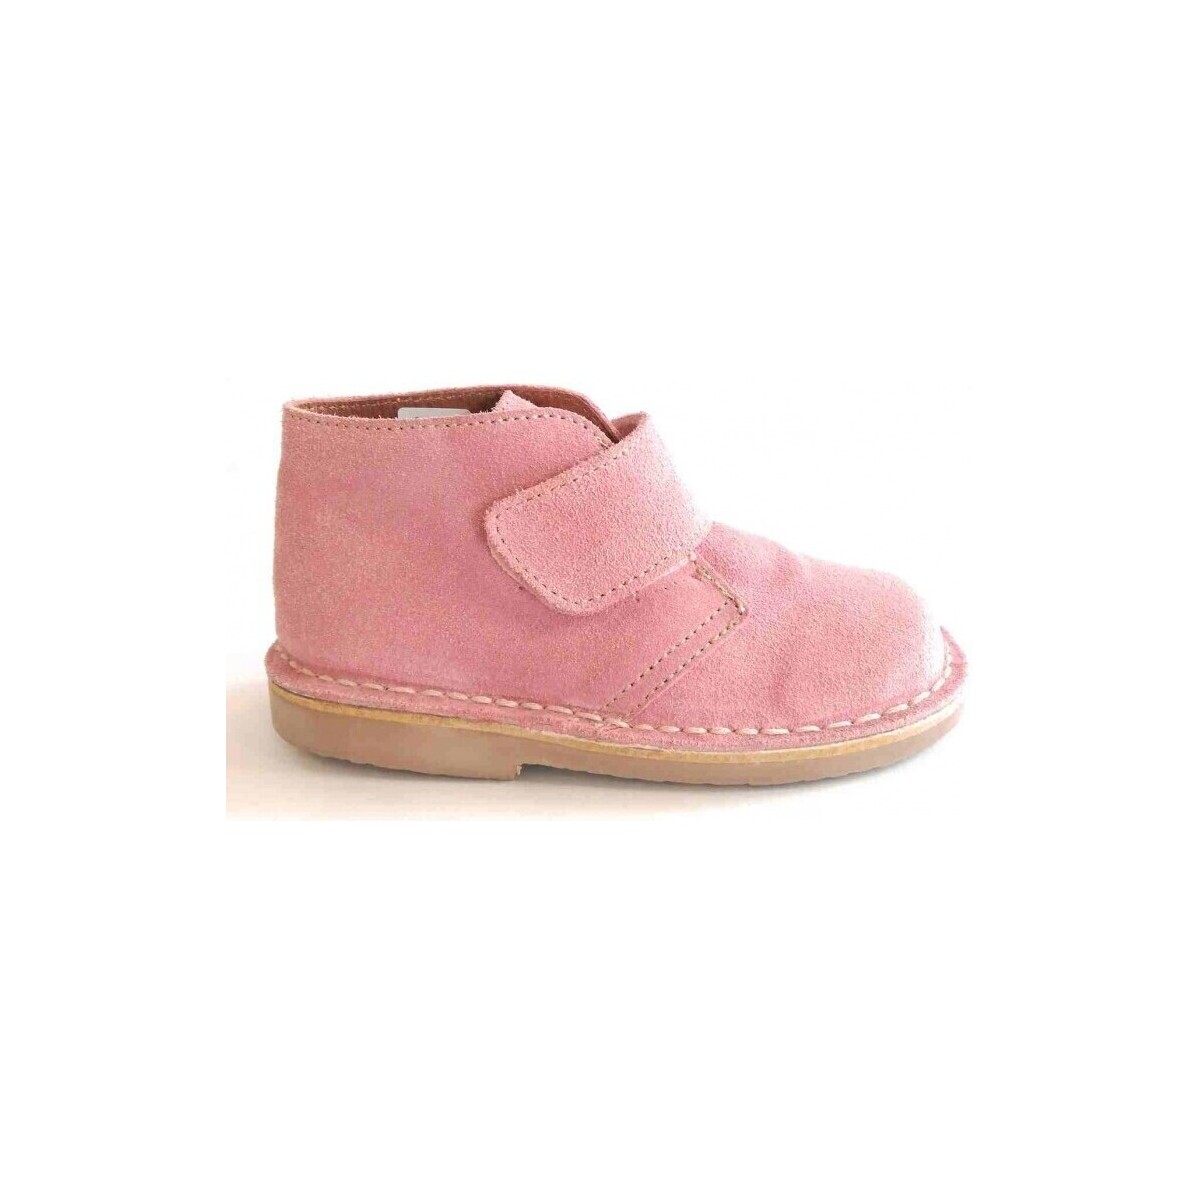 Sko Støvler Colores 20703-18 Pink